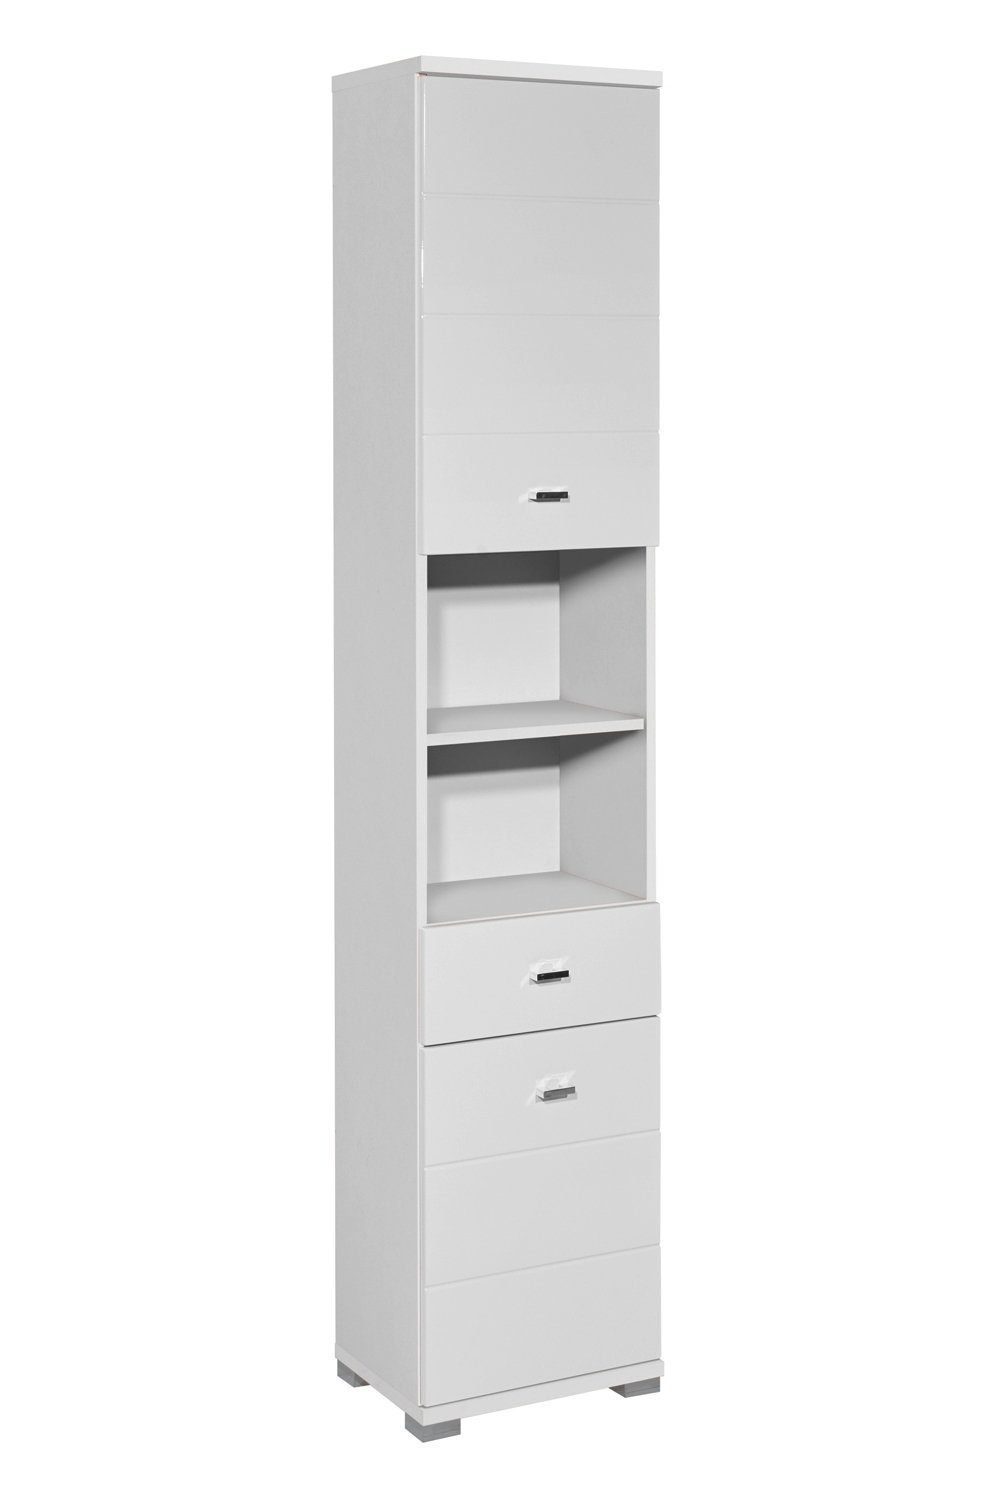 Bega Consult Hochschrank POOL, B 38 cm, Weiß, mit 2 Türen und 1 Schublade